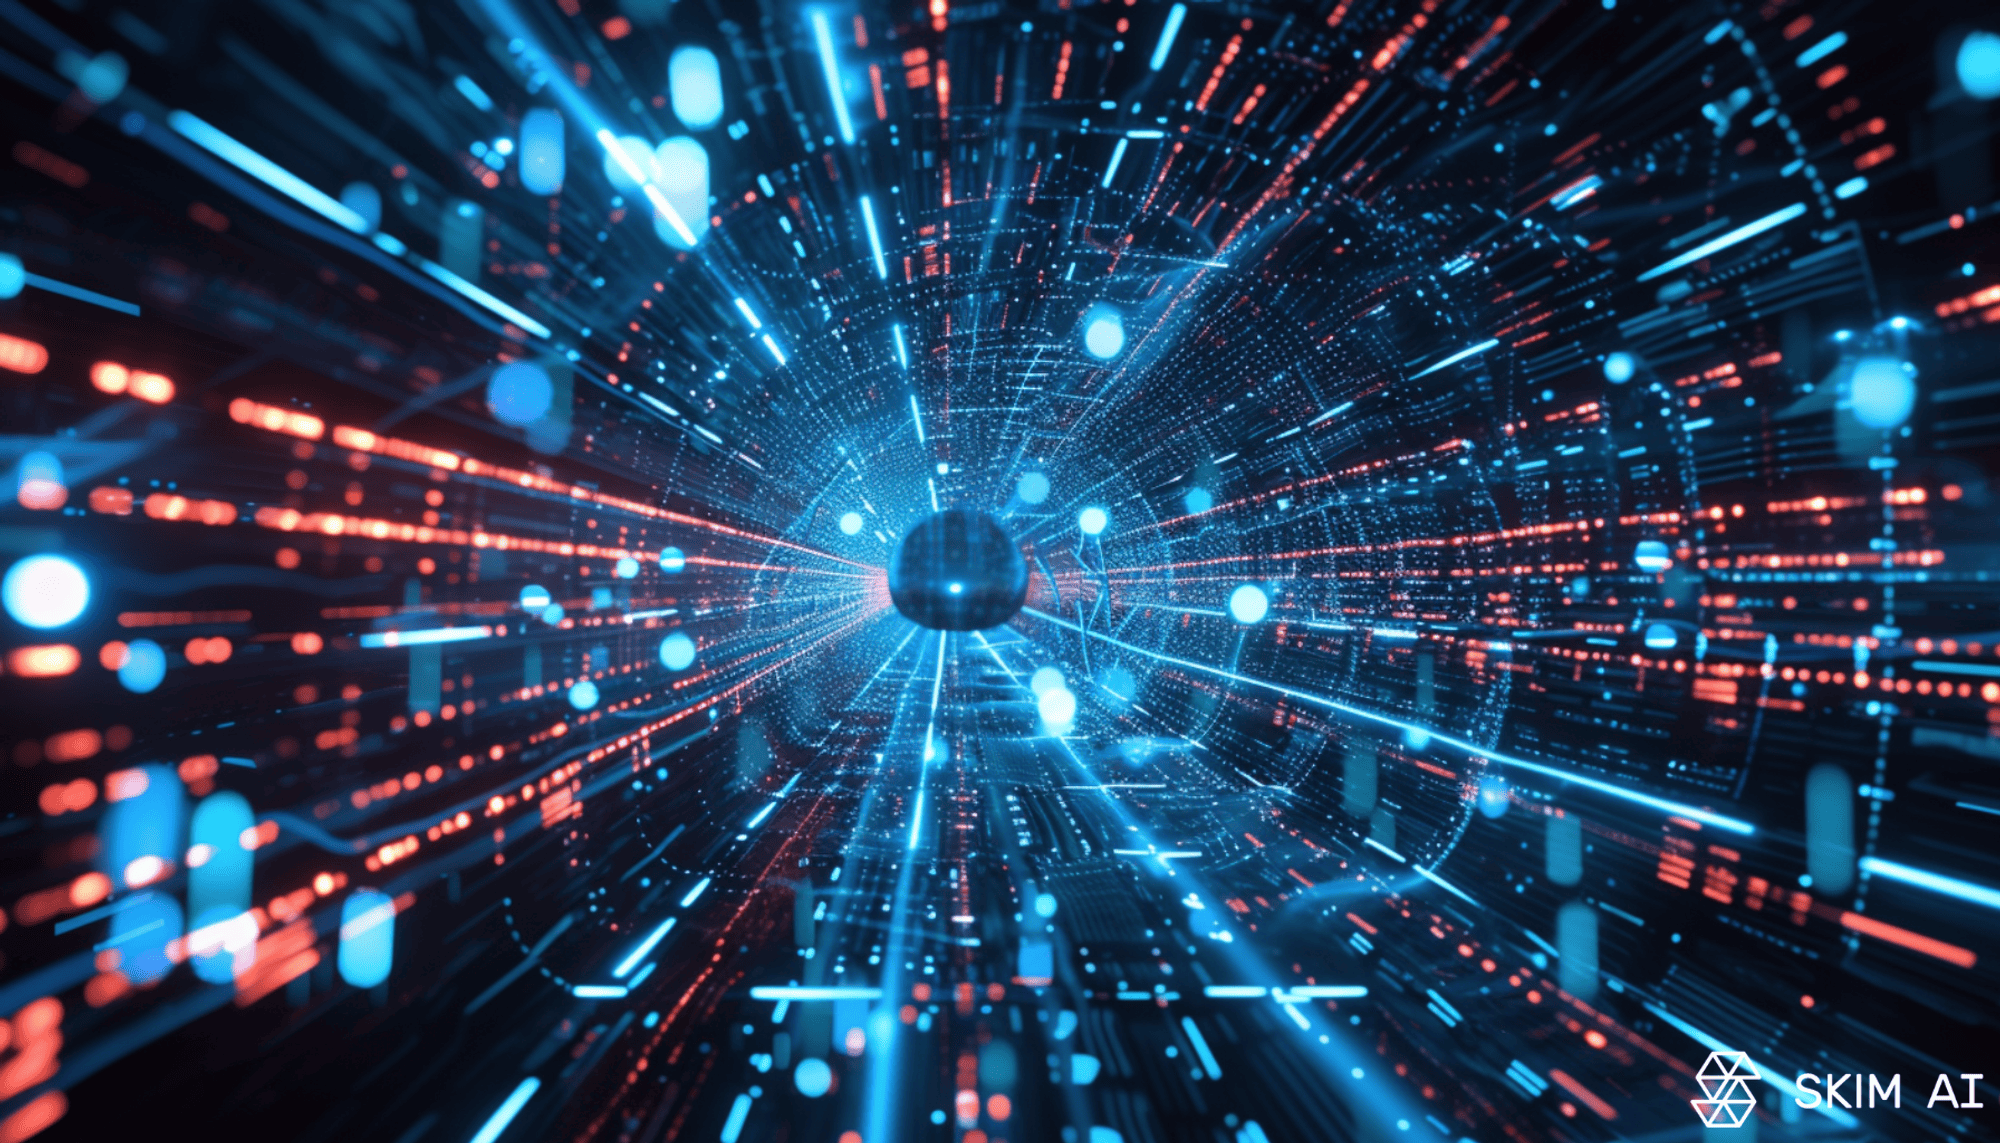 túnel digital con una esfera central rodeada de rayas de luz